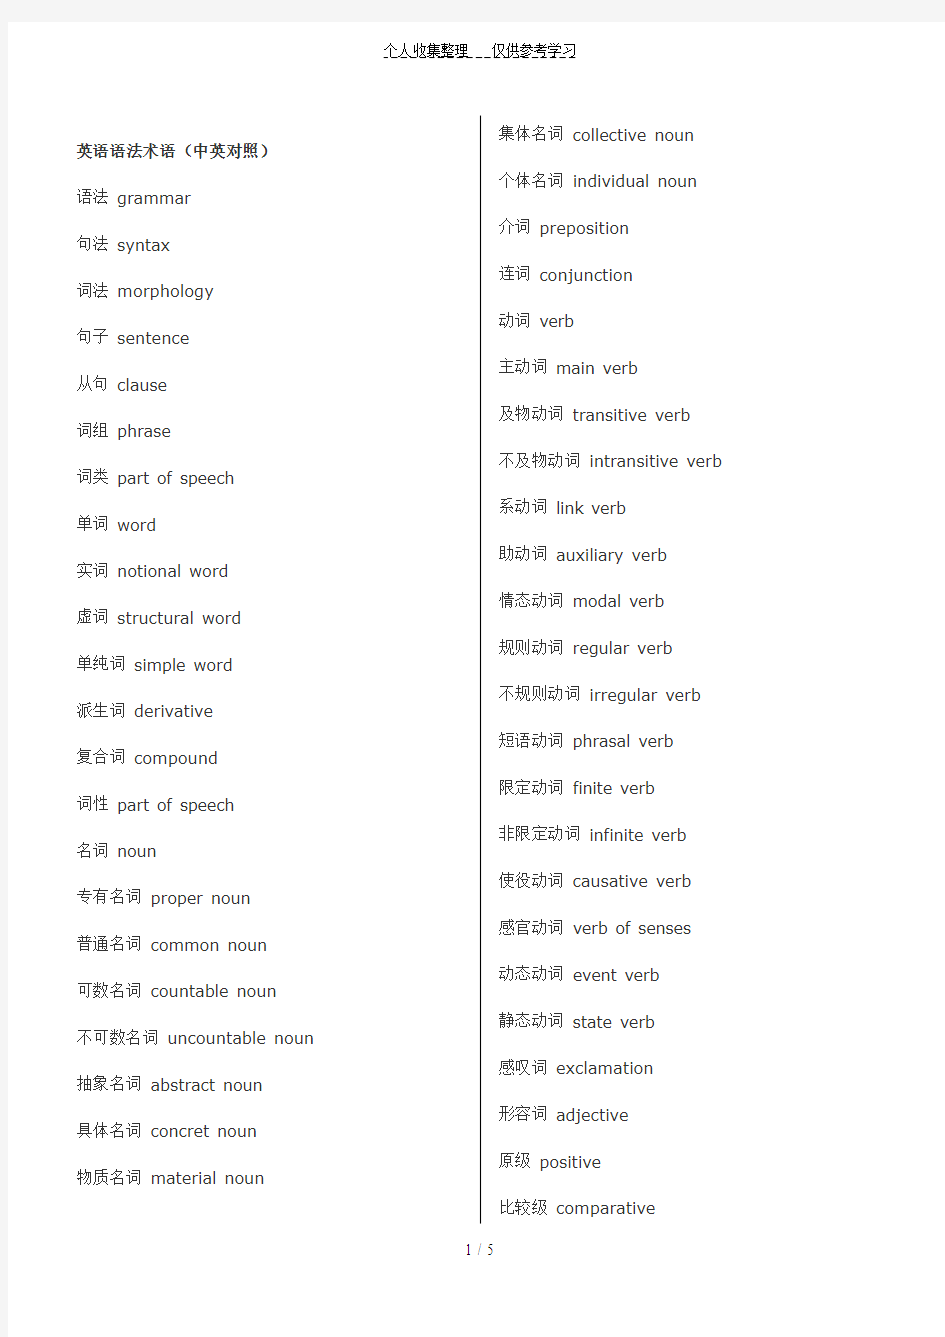 英汉语法术语对照表